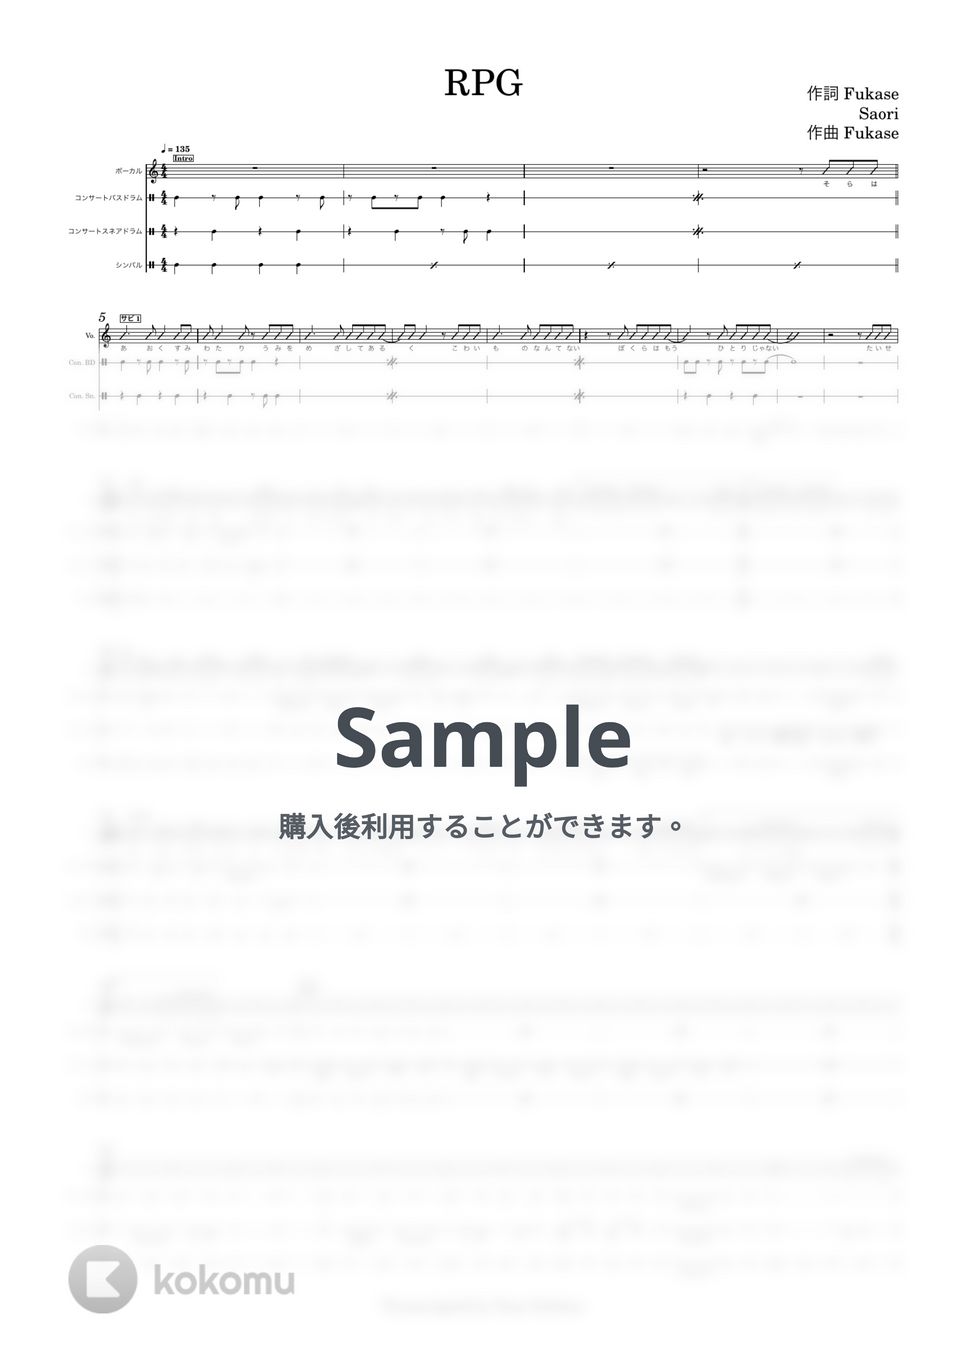 SEKAI NO OWARI - RPG by よしのドラム教室